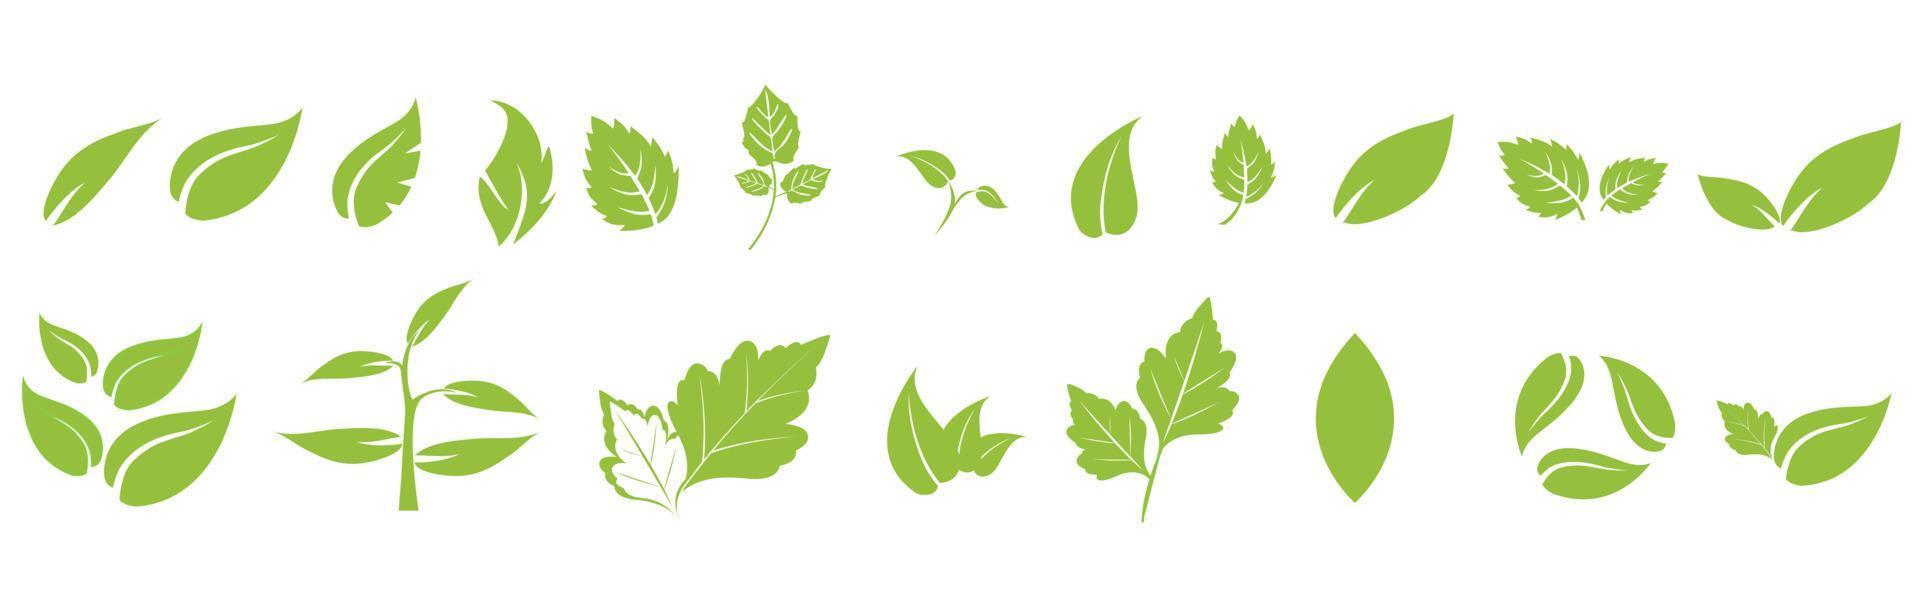 Blattsymbole setzen Ökologie-Naturelement, grüne Blätter, Umwelt und Natur-Öko-Zeichen. Blätter auf weißem Hintergrund vektor